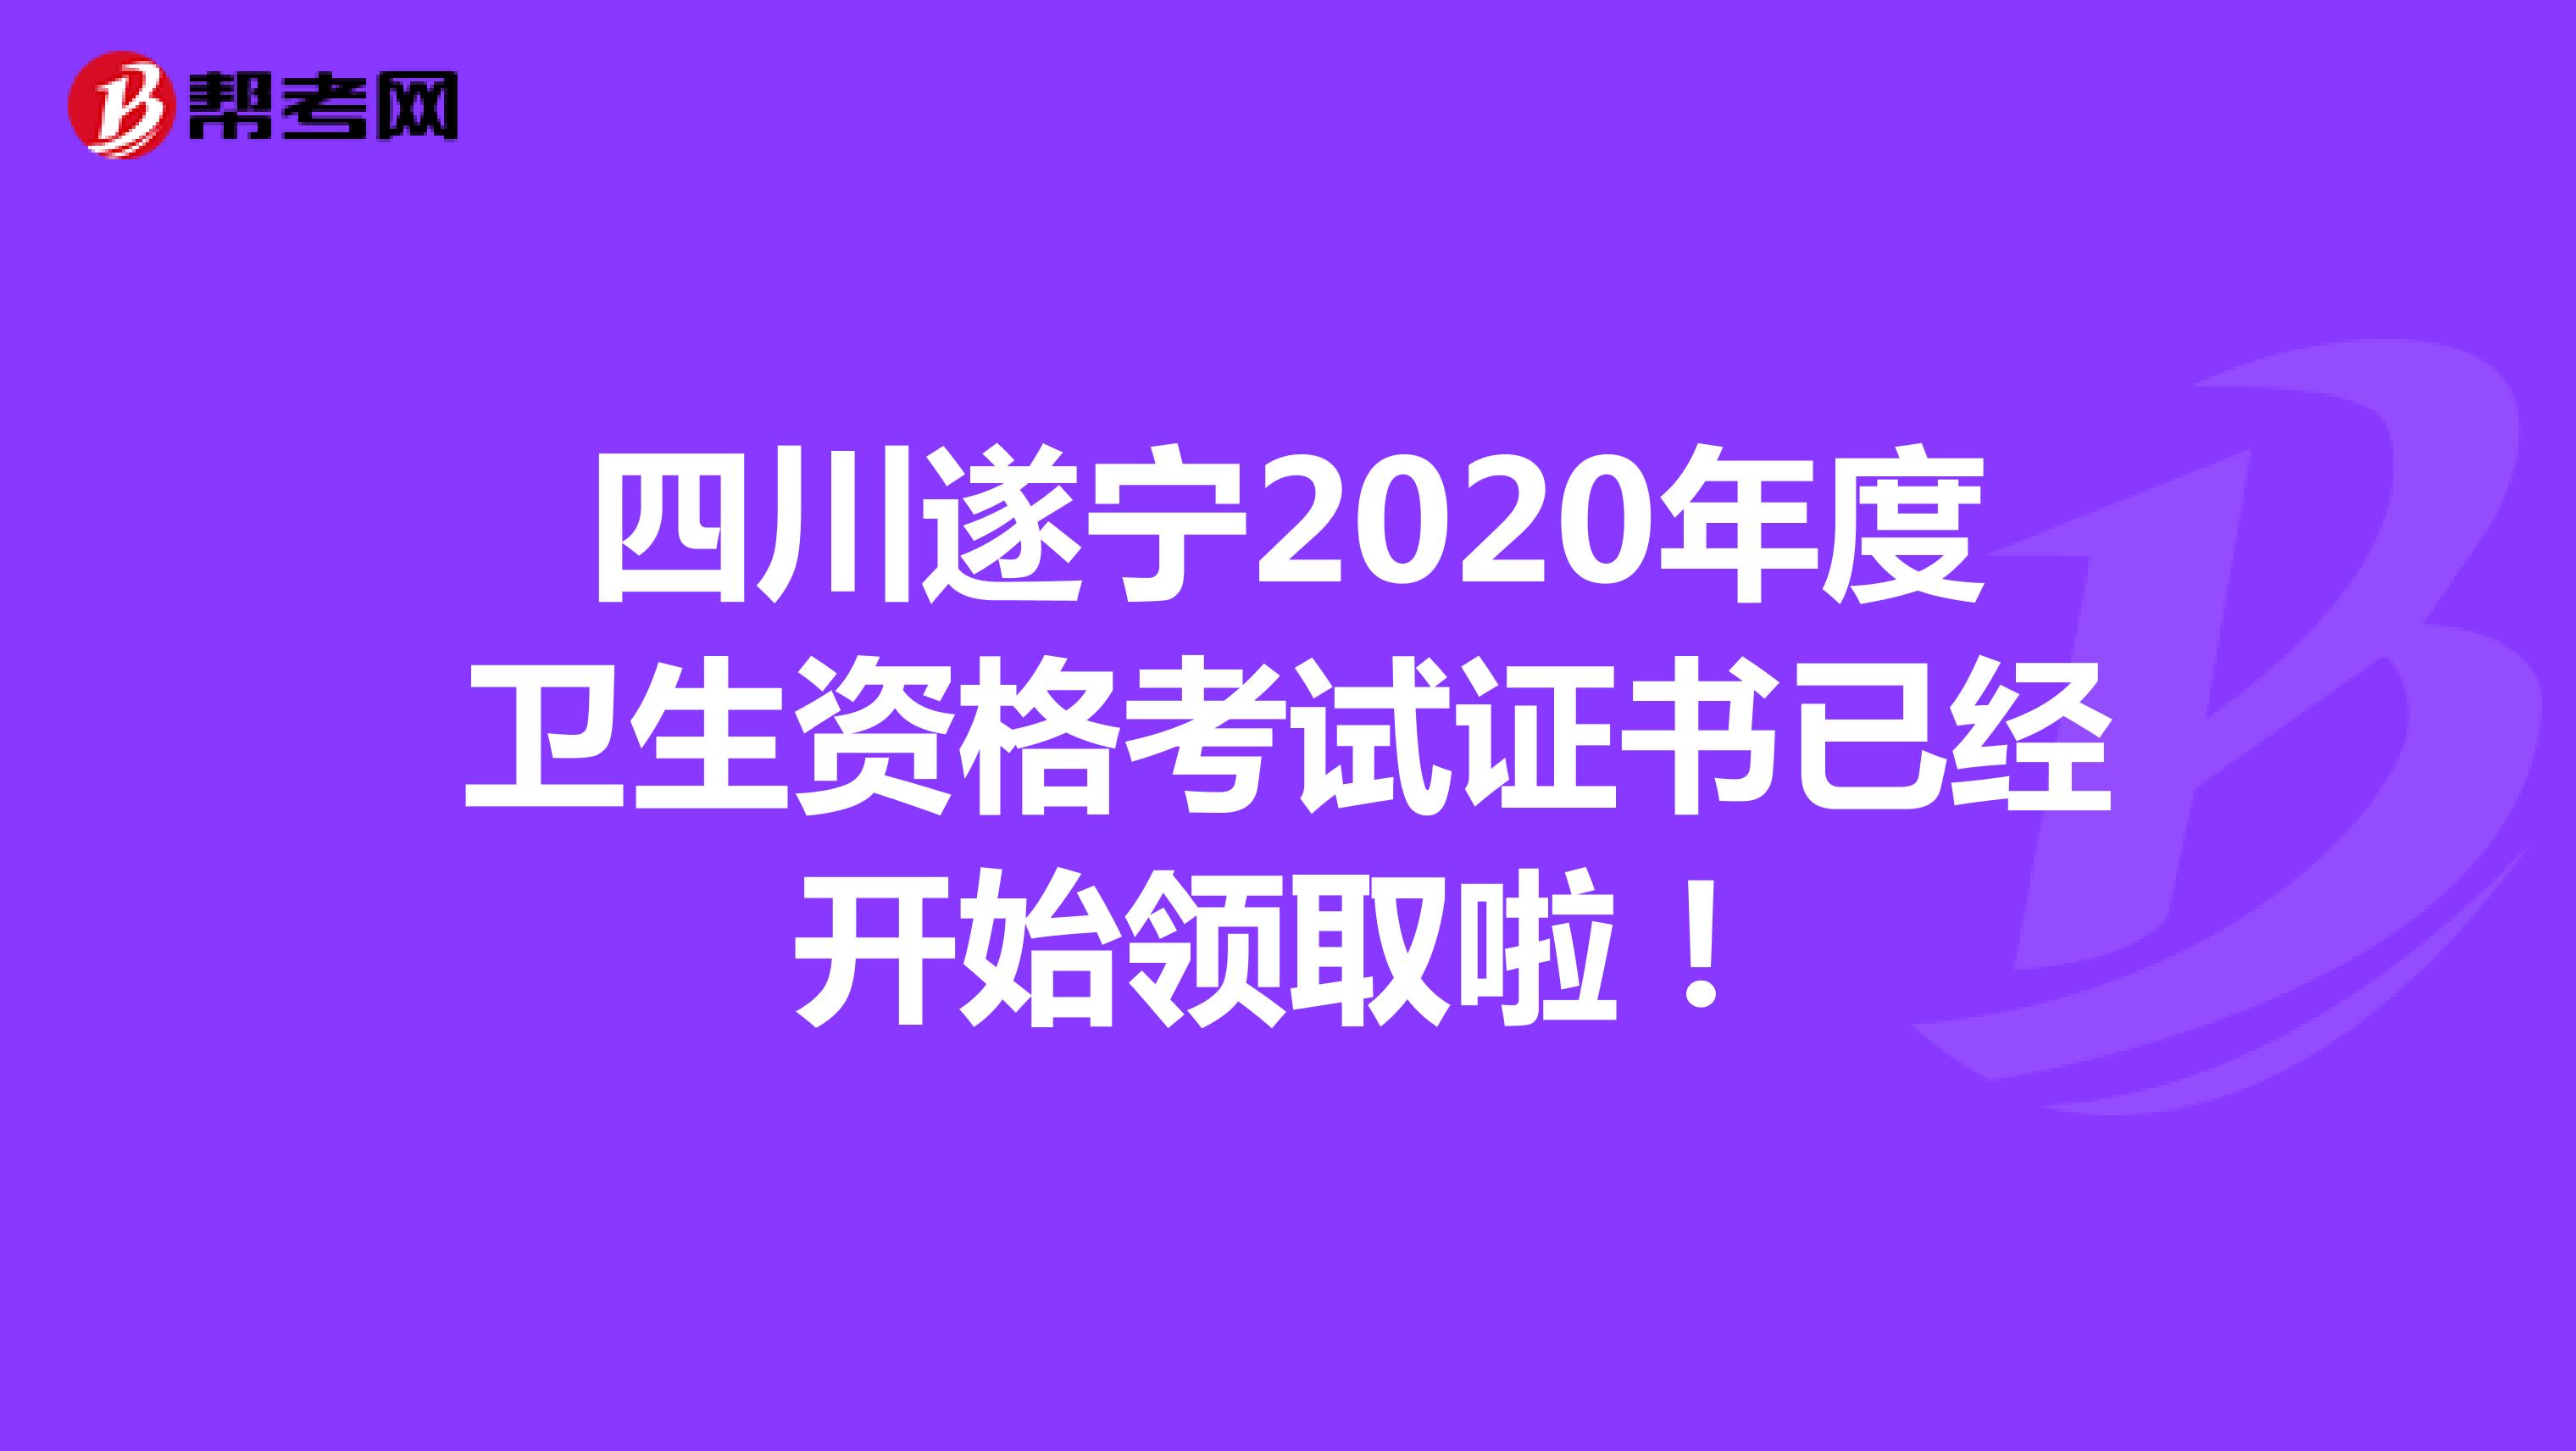 四川遂宁2020年度卫生资格考试证书已经开始领取啦！